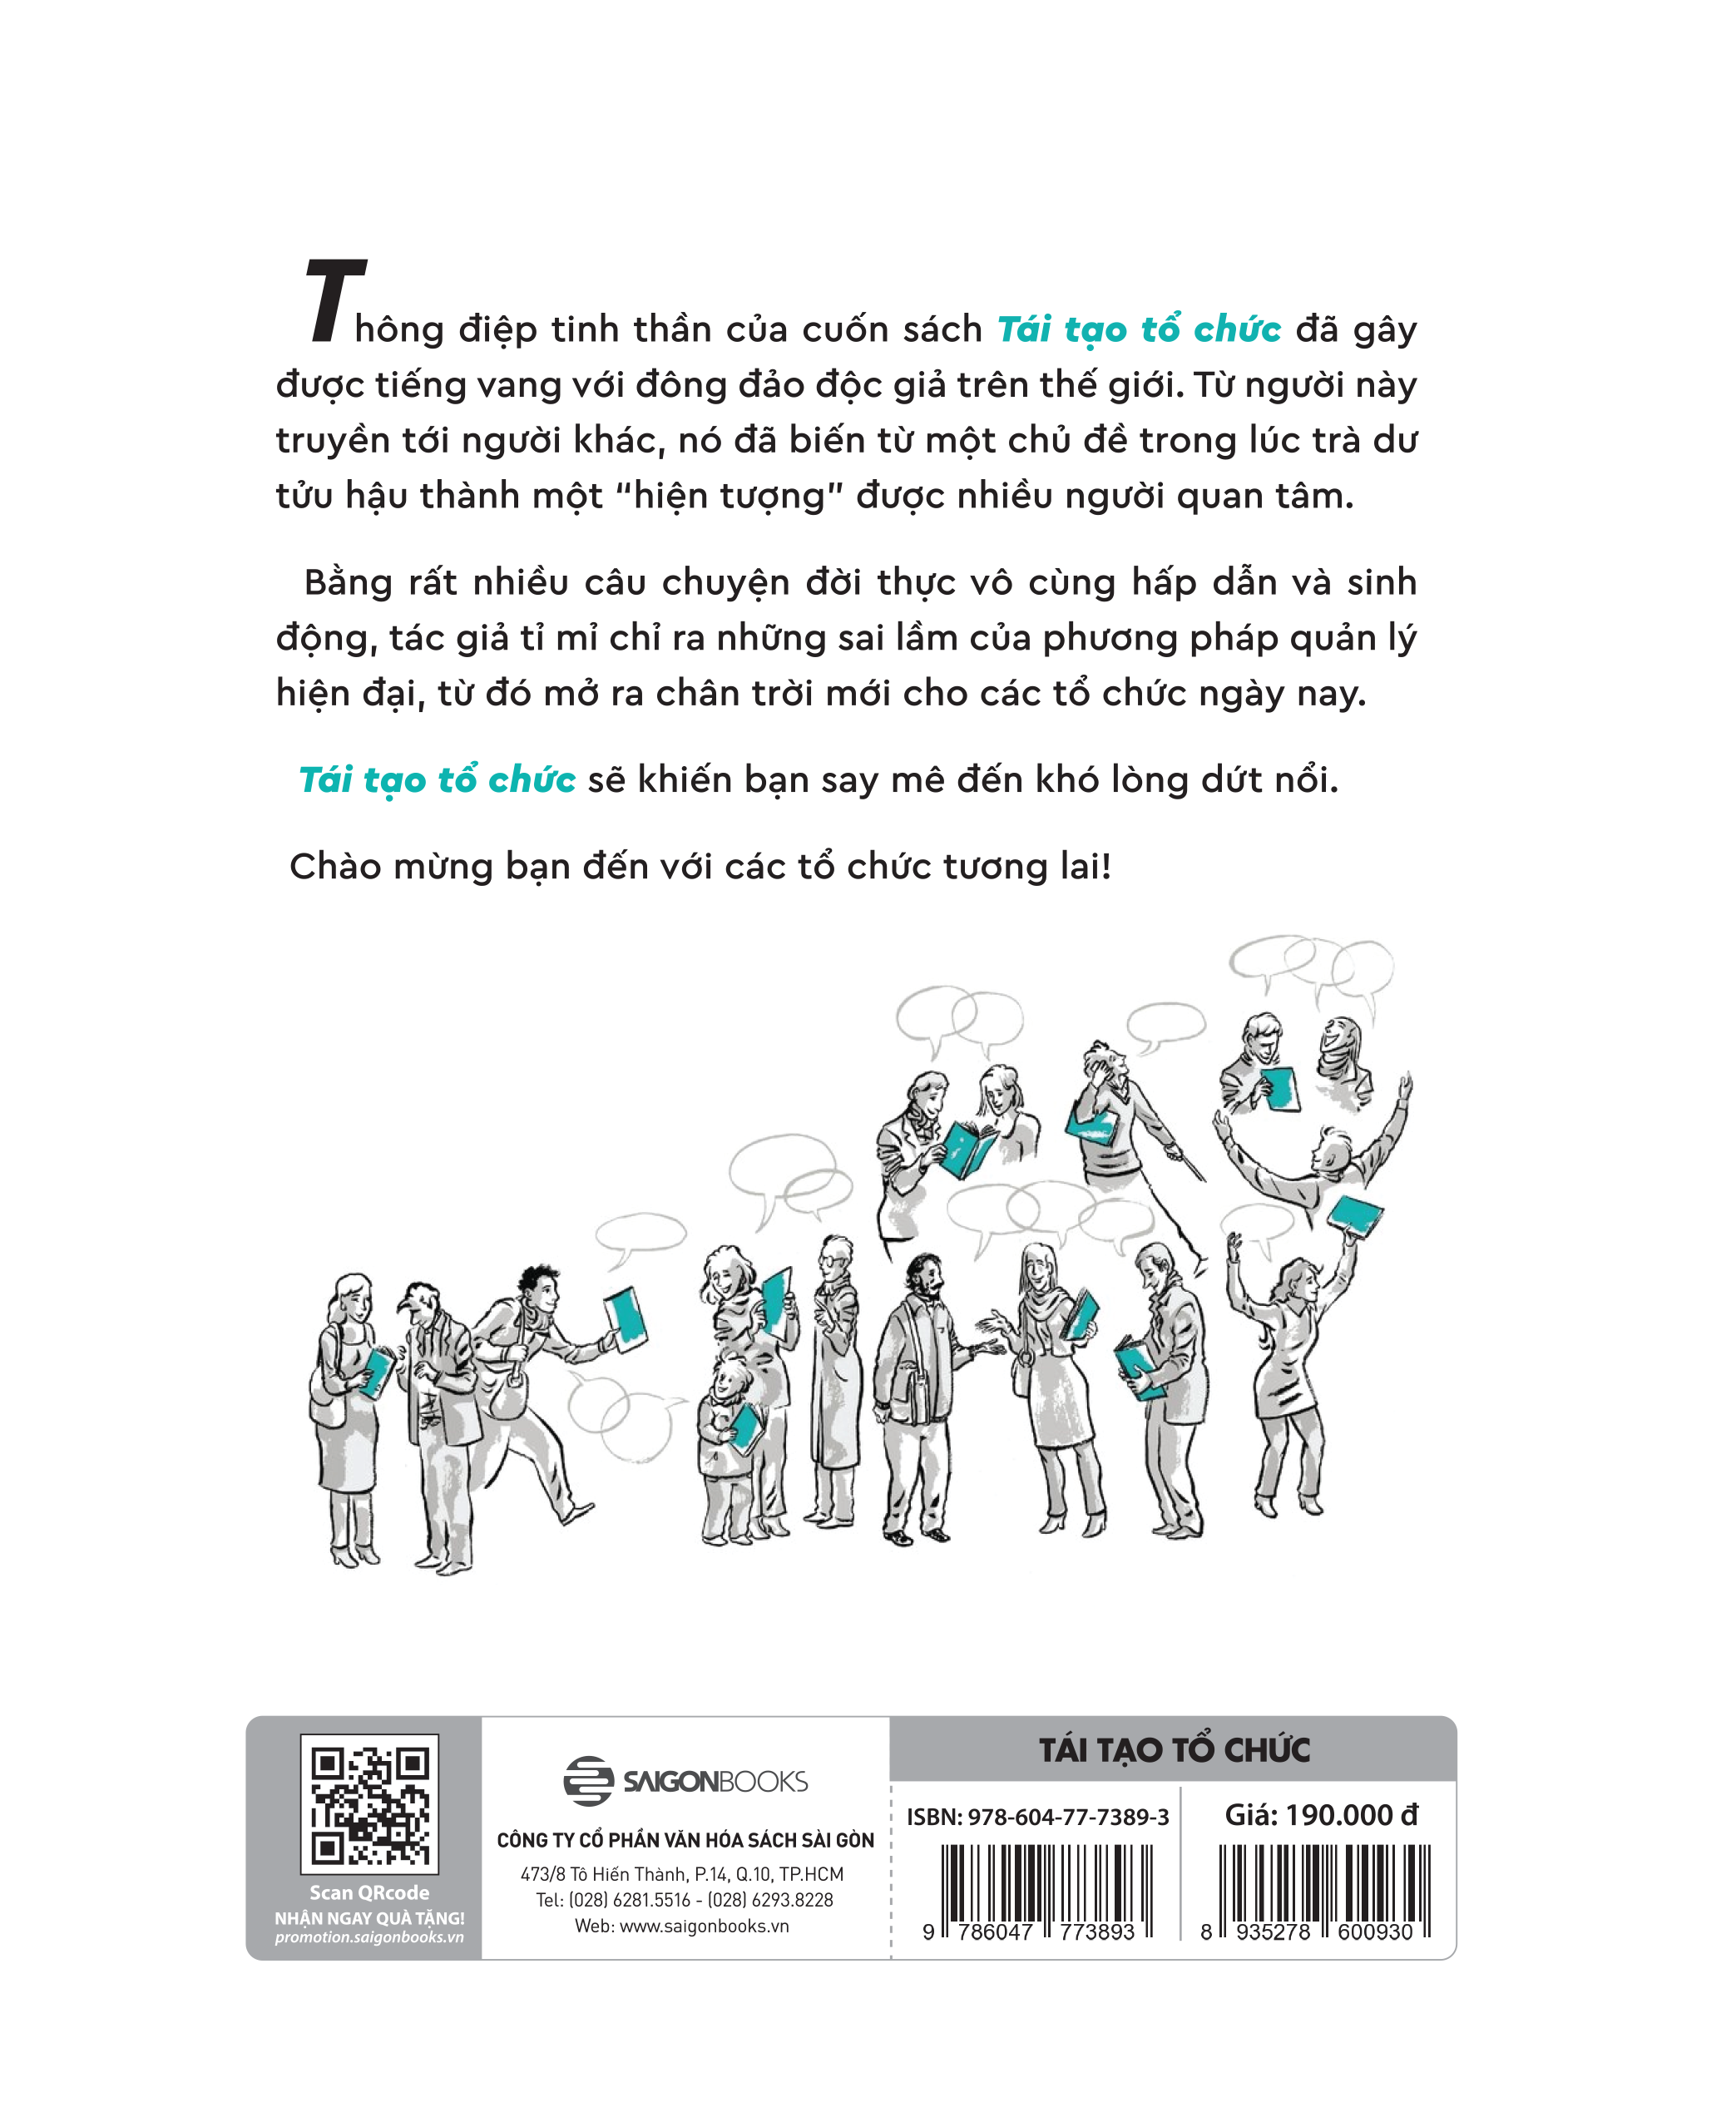 Bộ Sách Tái Tạo Tổ Chức Where To Play: 3 Bước Để Xác Định Thị Trường Đắt Giá Của Doanh Nghiệp - Tặng Kèm Sách: 10 Bước Đến Thành Công PDF